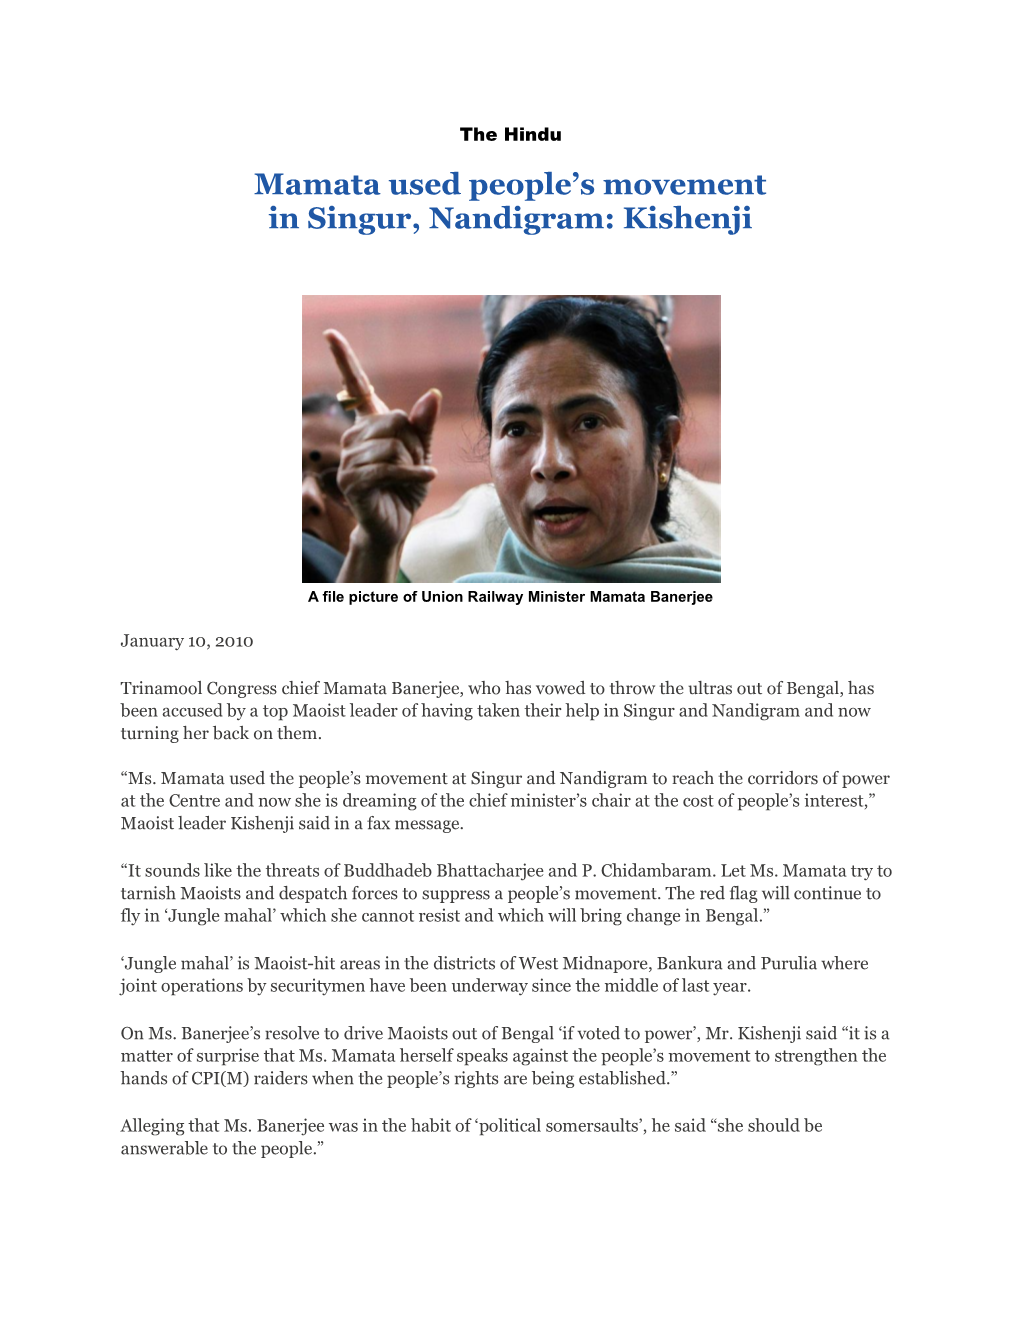 Mamata Used People's Movement in Singur, Nandigram: Kishenji